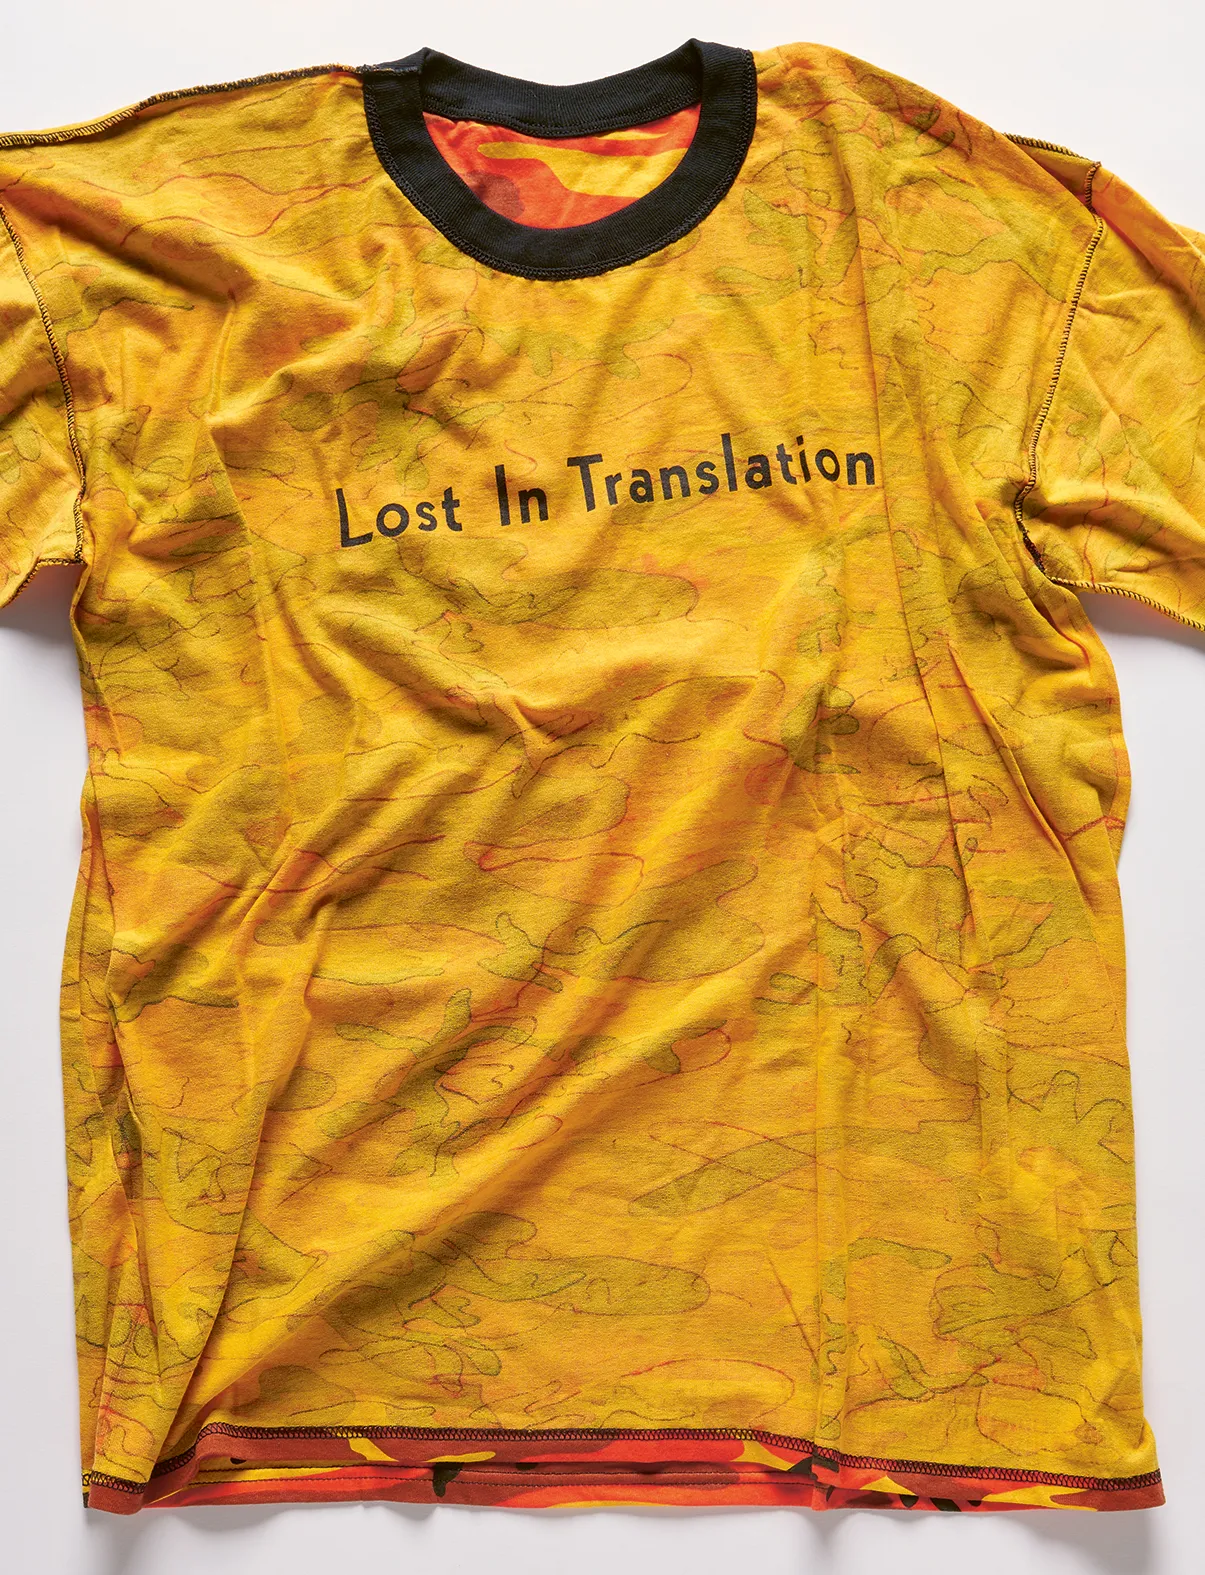 Replika koszulki noszonej przez Billa Murraya w filmie „Między słowami”, którą Coppola zrobiła jako prezent dla obsady i ekipy. (Fot. Sofia Coppola)